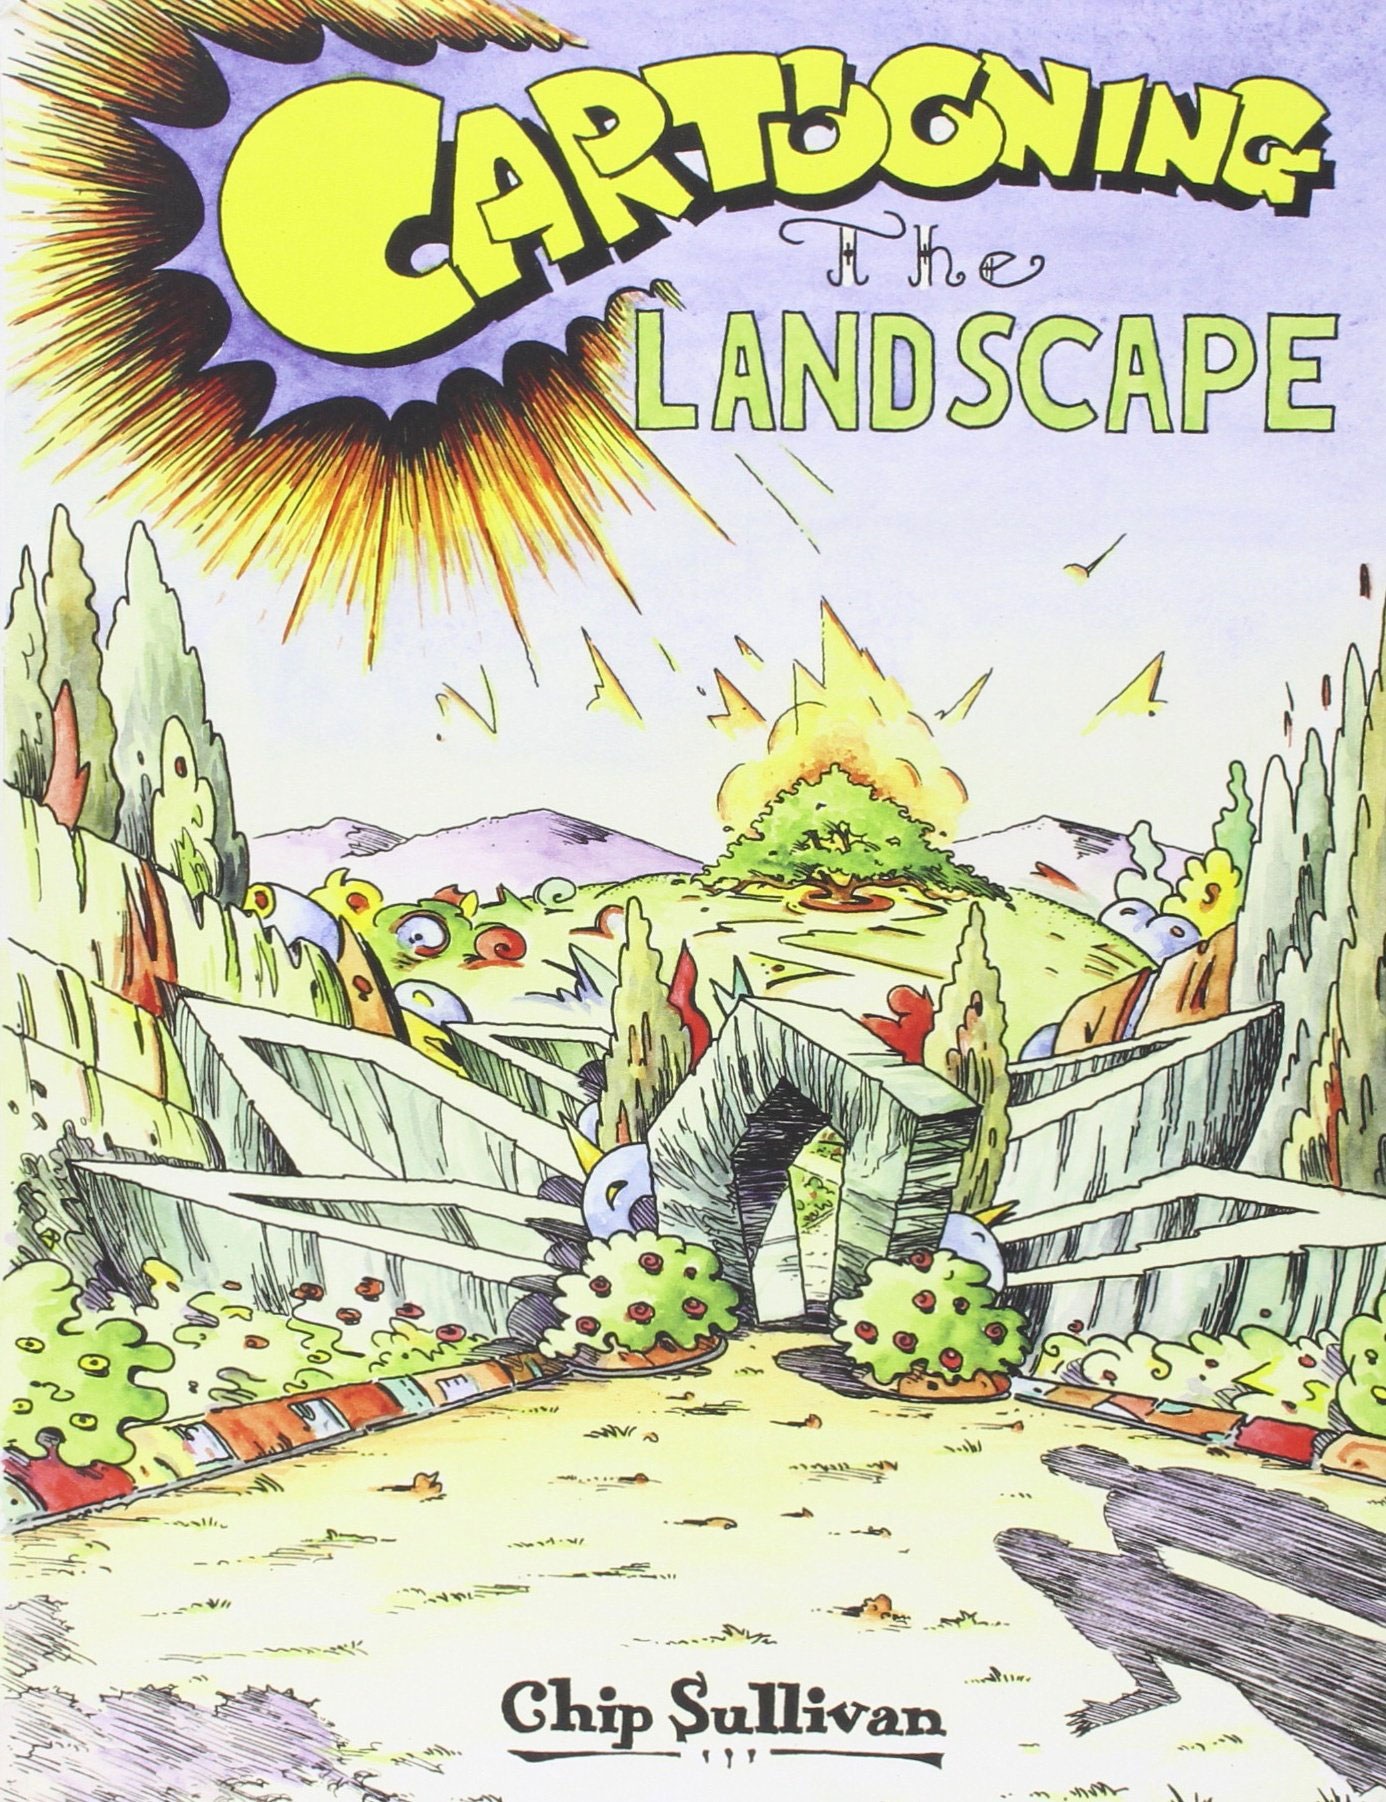 Chip Sullivan: Cartooning the Landscape